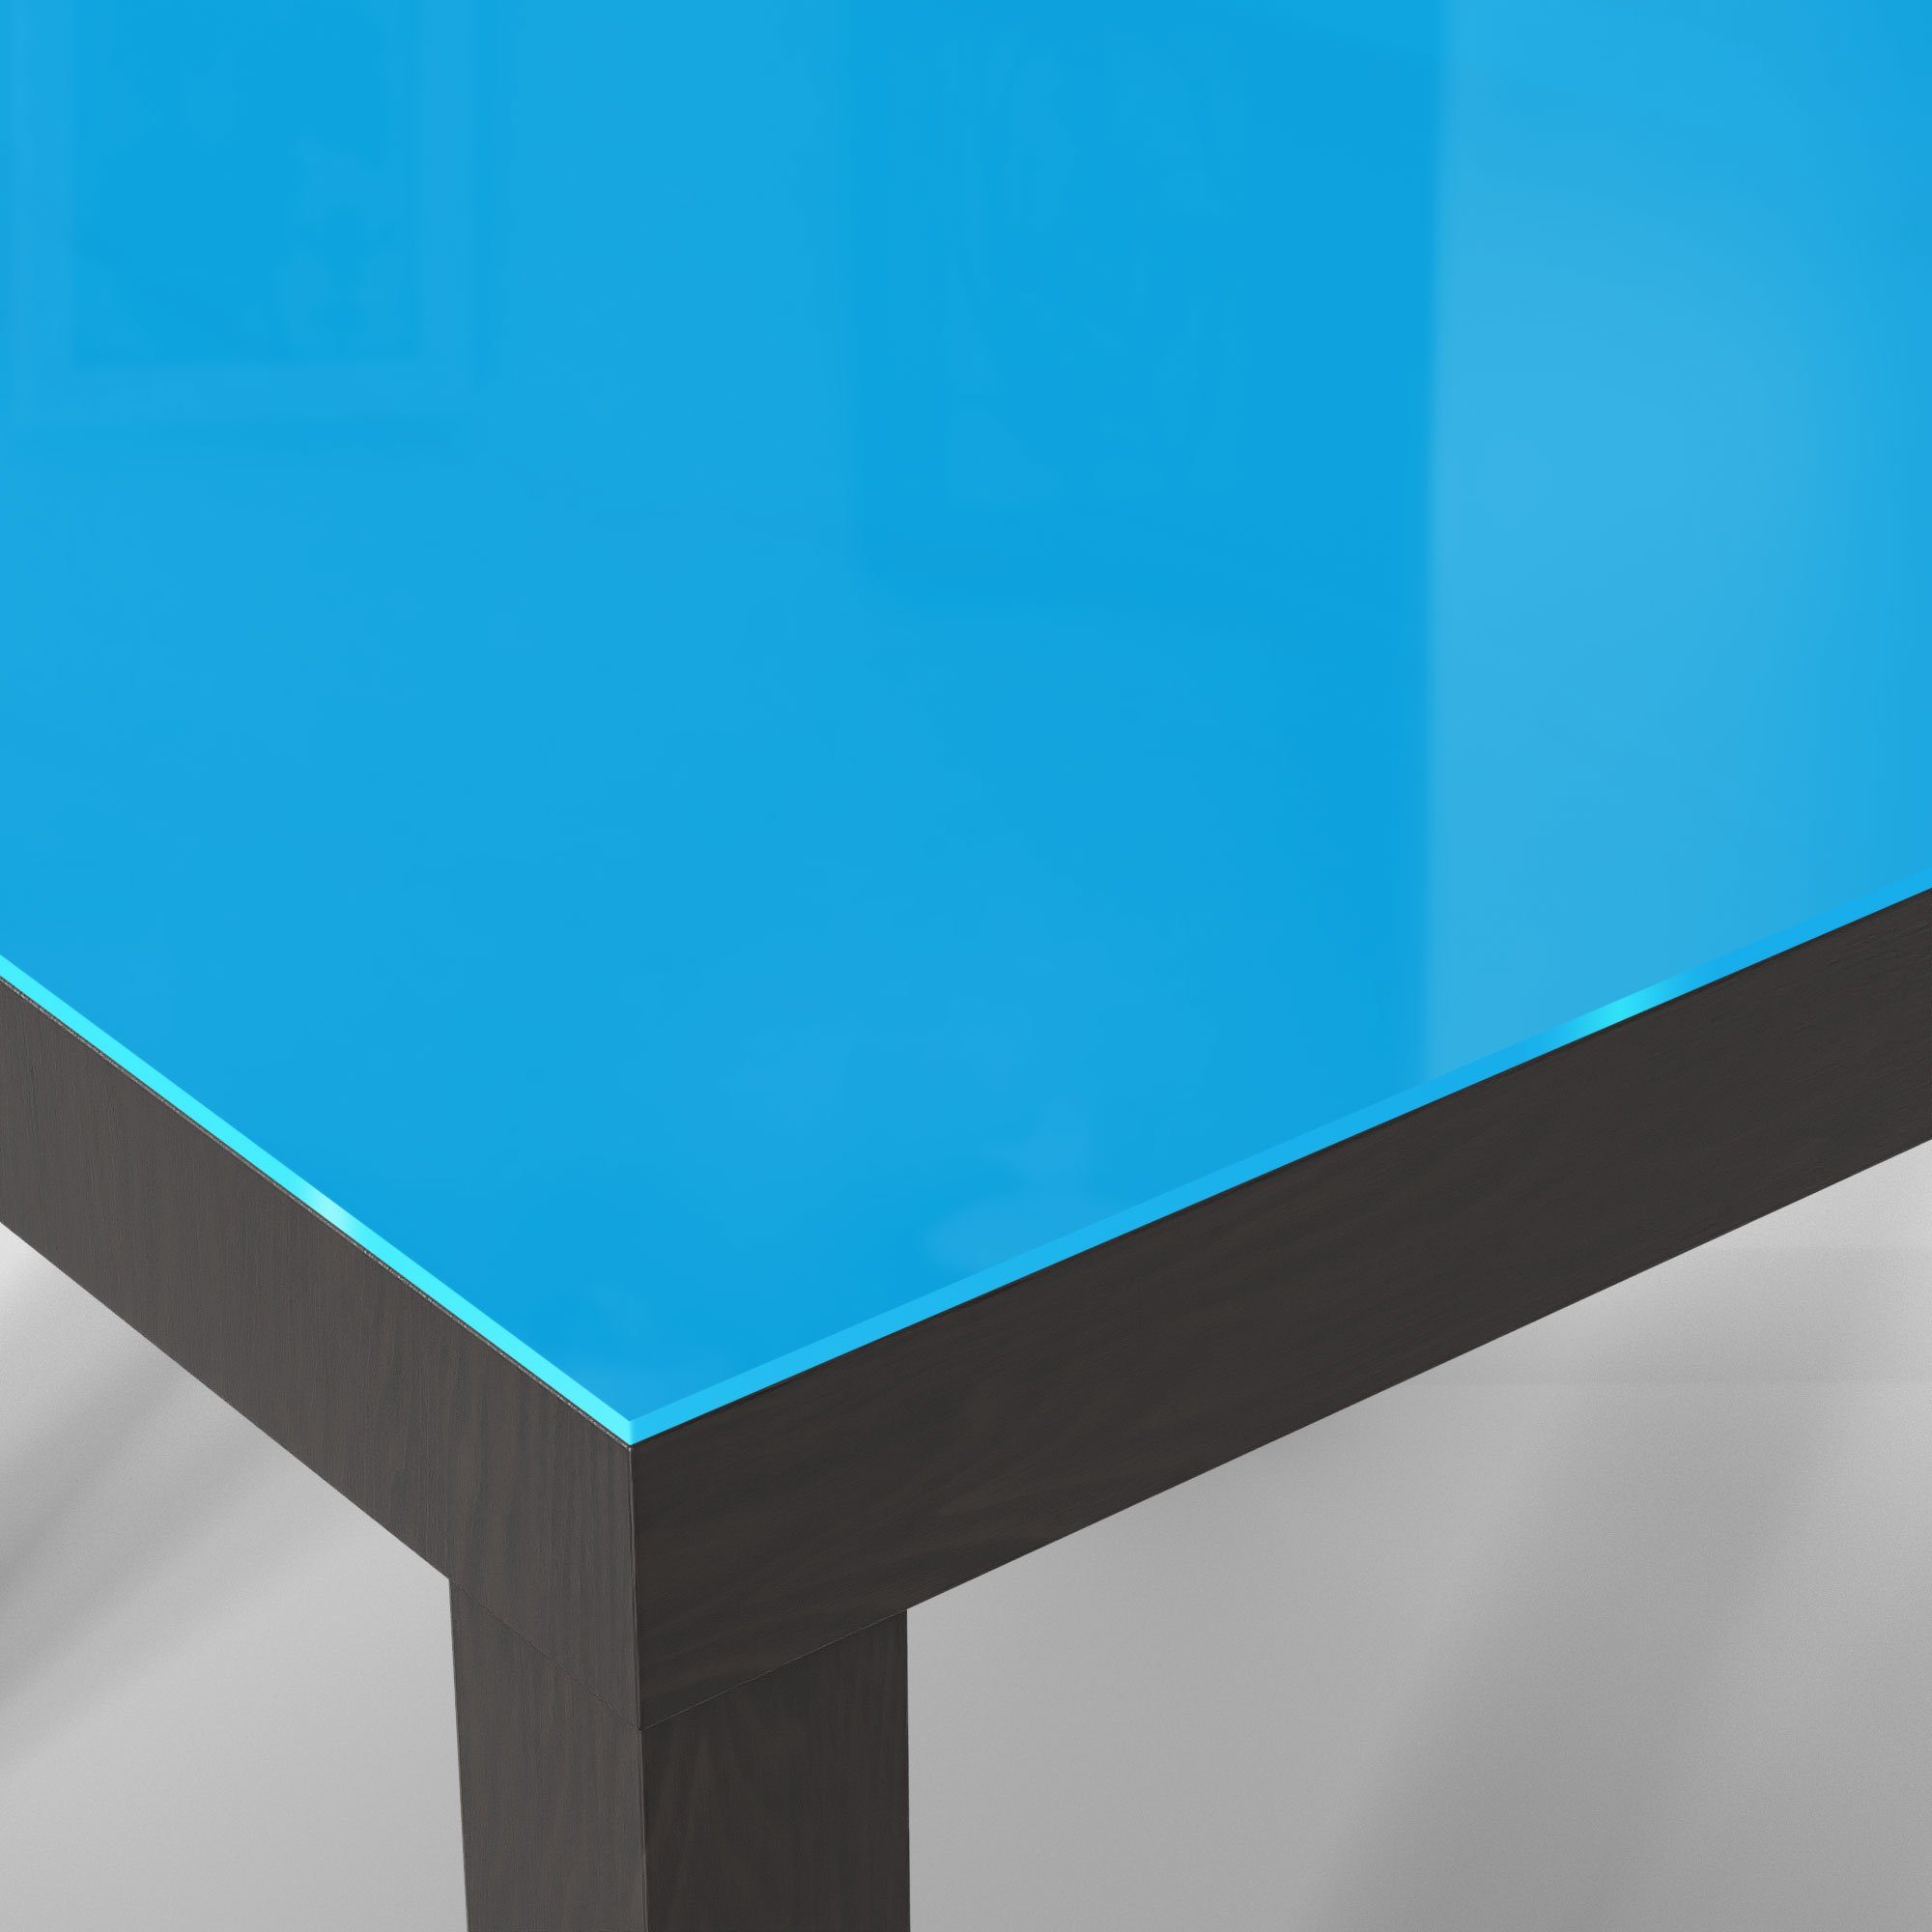 Schwarz DEQORI modern Beistelltisch Glastisch Couchtisch Glas - 'Unifarben Hellblau',